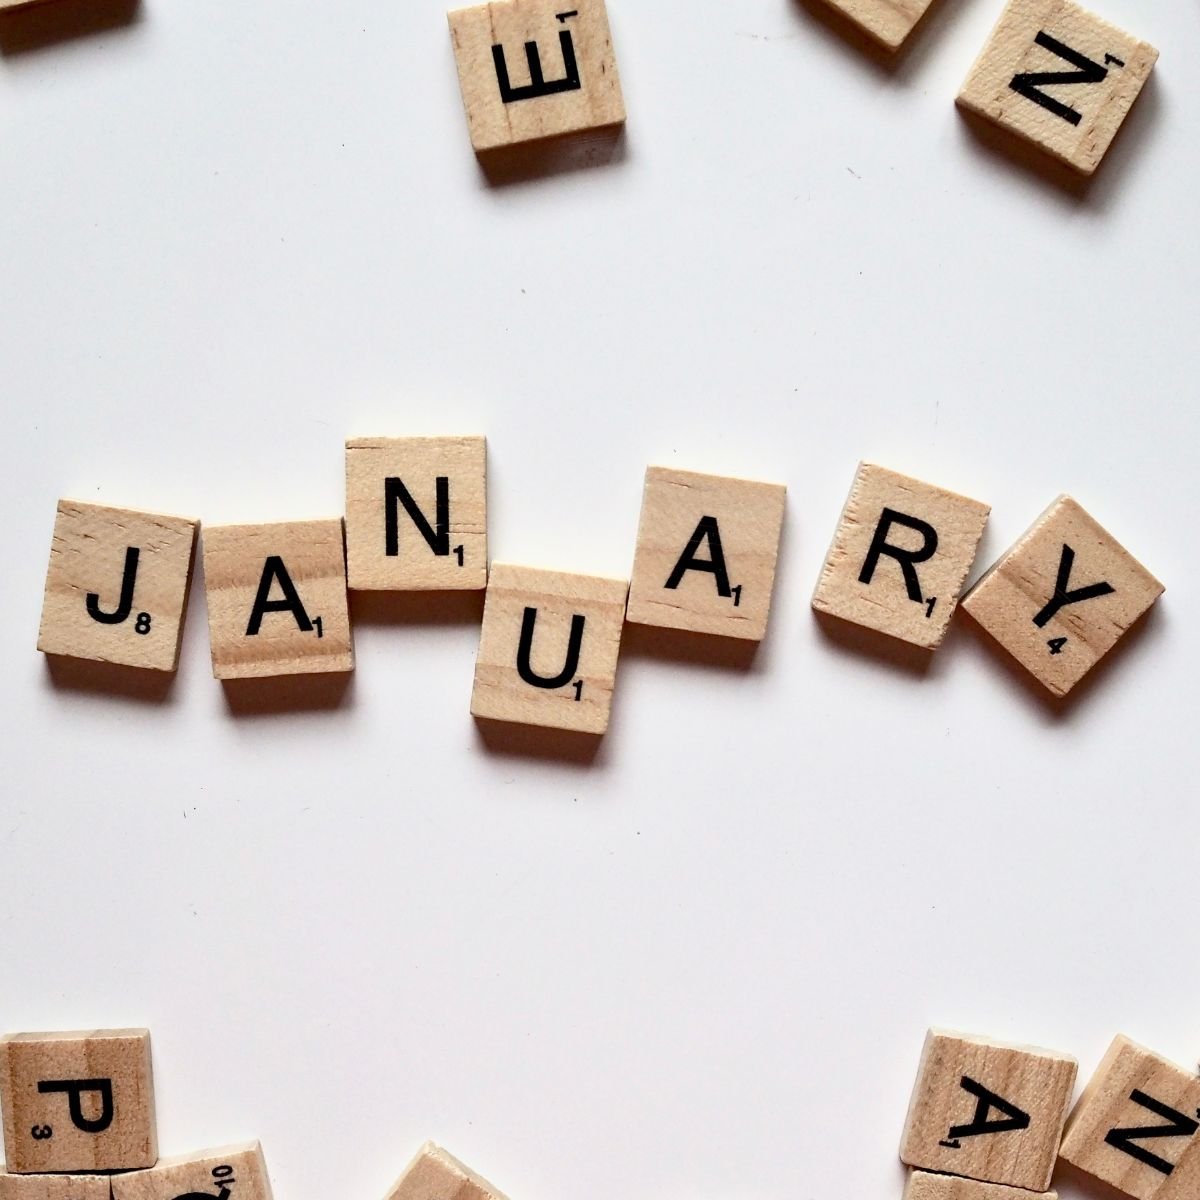 Scrabble tiles that spell January